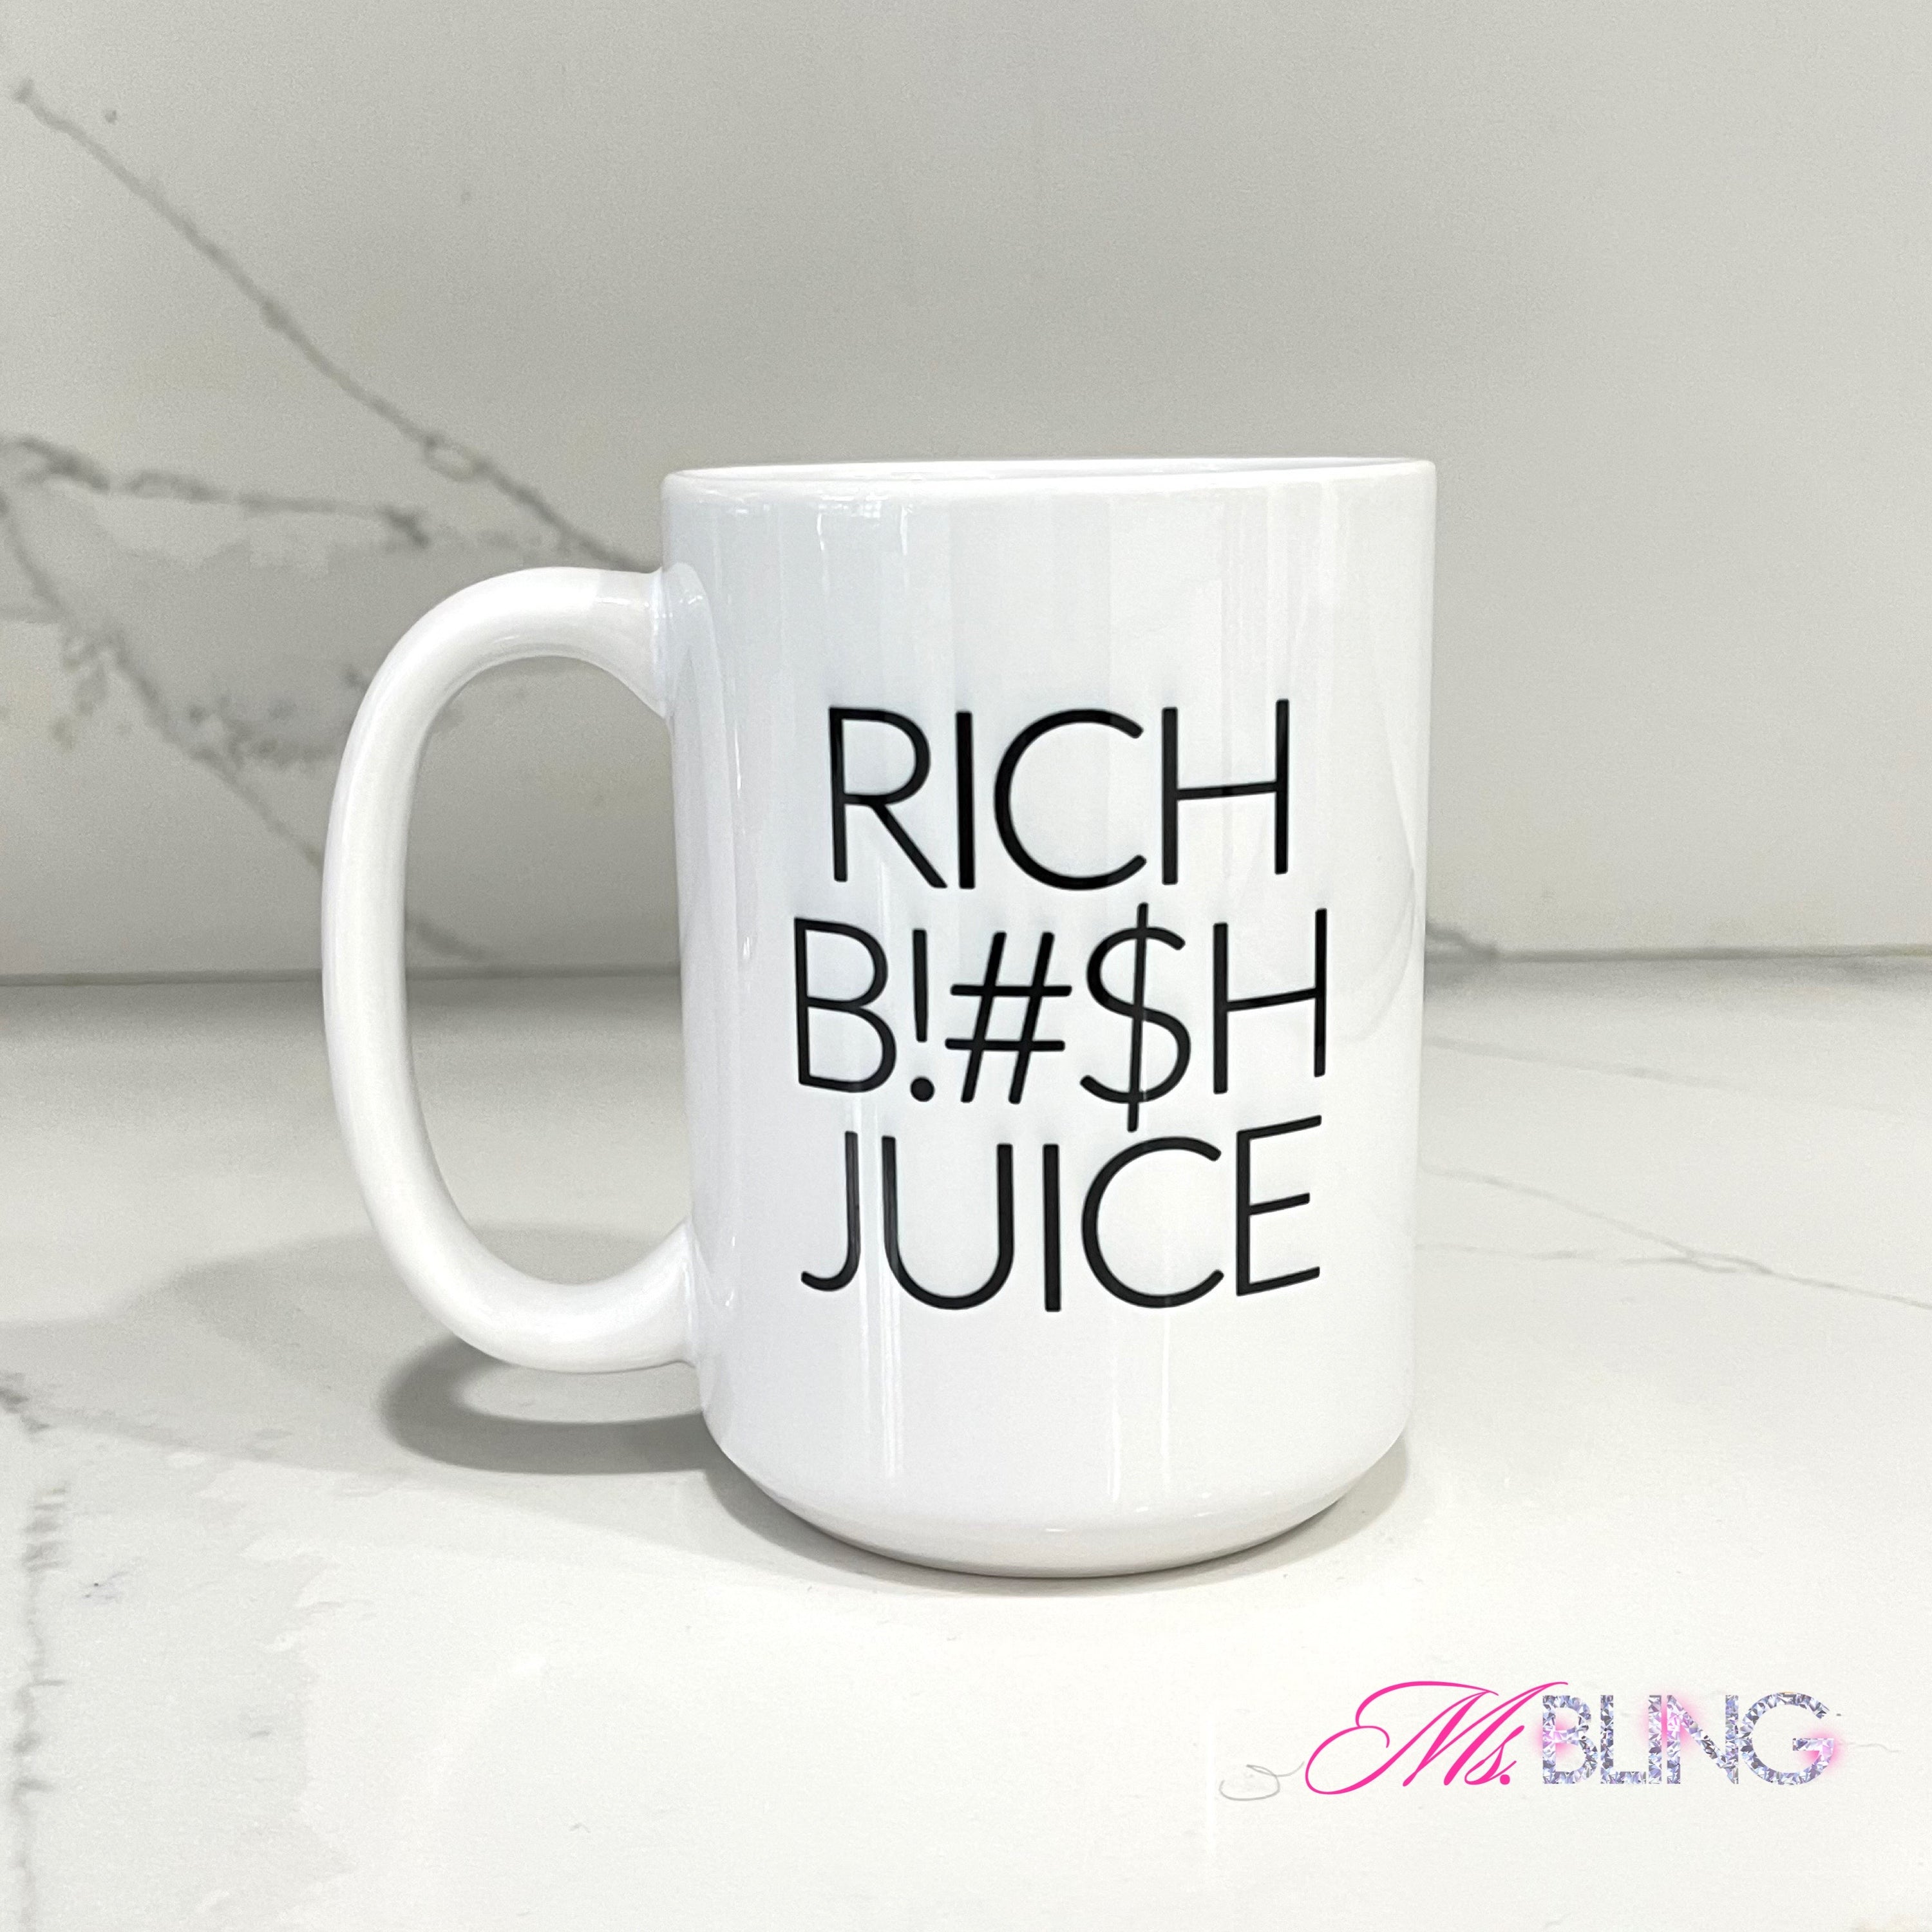 "RICH B!#SH JUICE" Mug